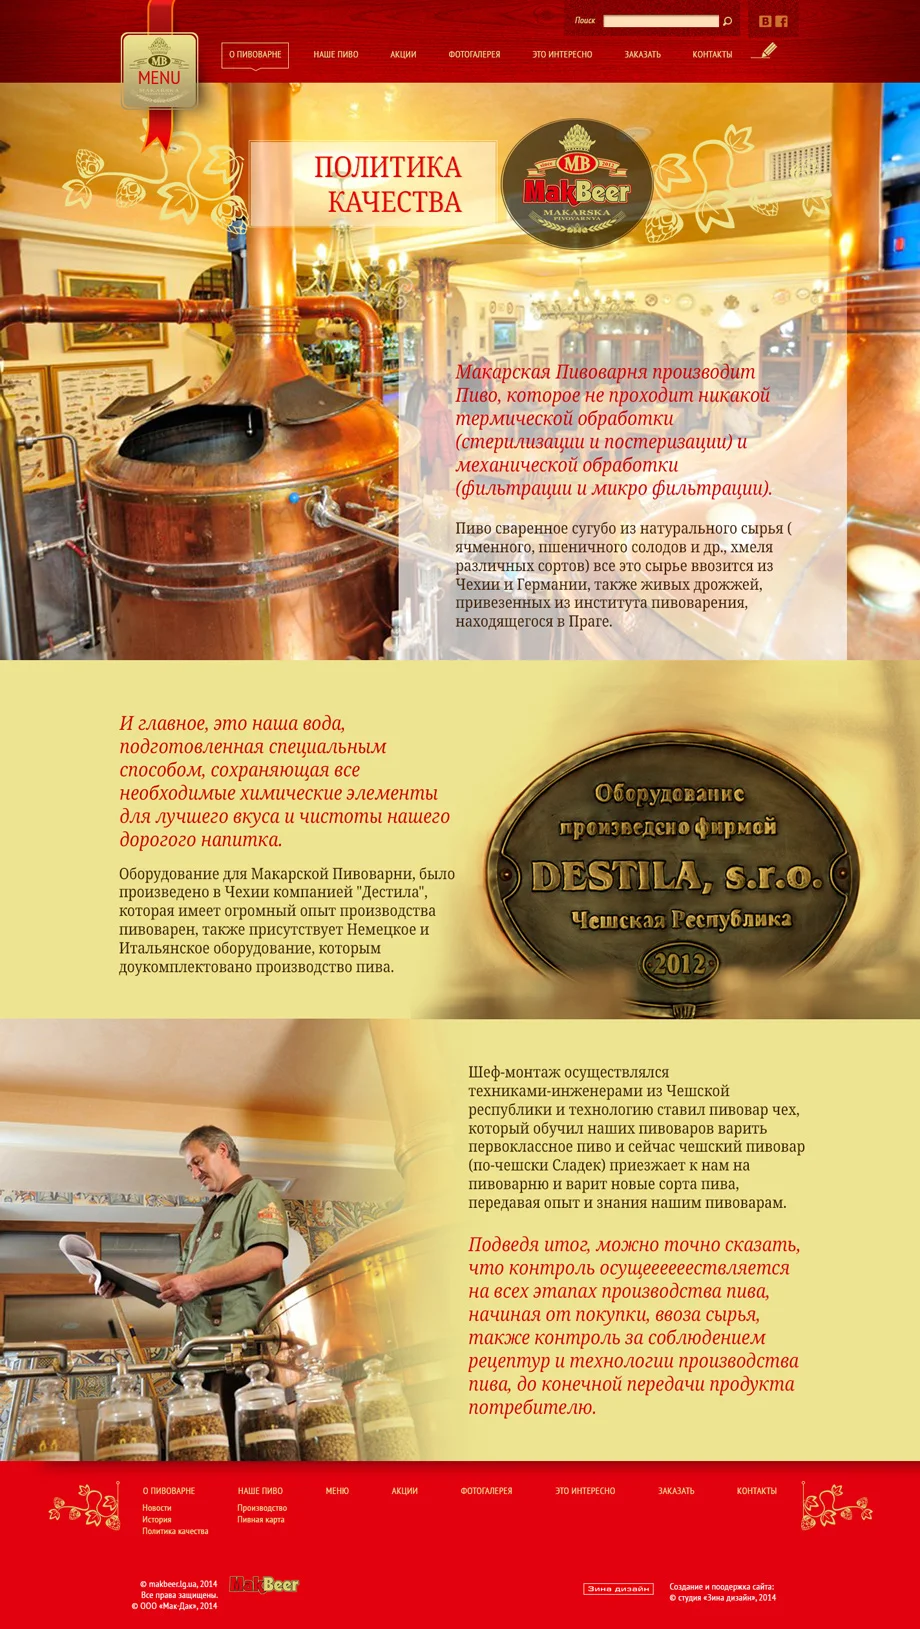 Дизайн сайта «Макарская пивоварня» - Политика качества